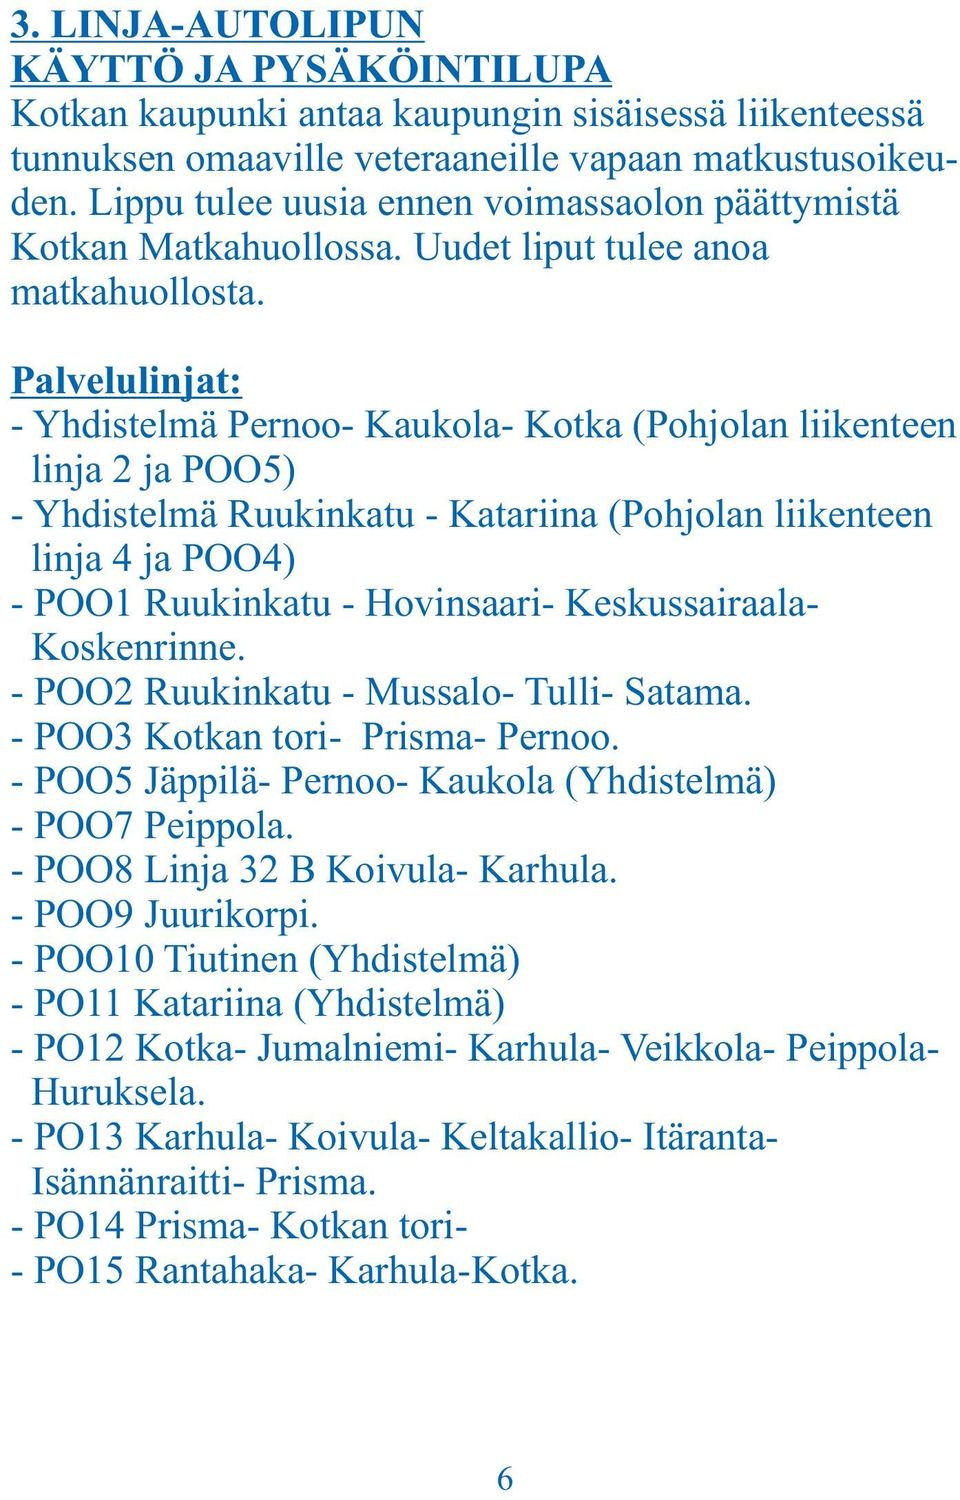 Palvelulinjat: - Yhdistelmä Pernoo- Kaukola- Kotka (Pohjolan liikenteen linja 2 ja POO5) - Yhdistelmä Ruukinkatu - Katariina (Pohjolan liikenteen linja 4 ja POO4) - POO1 Ruukinkatu - Hovinsaari-